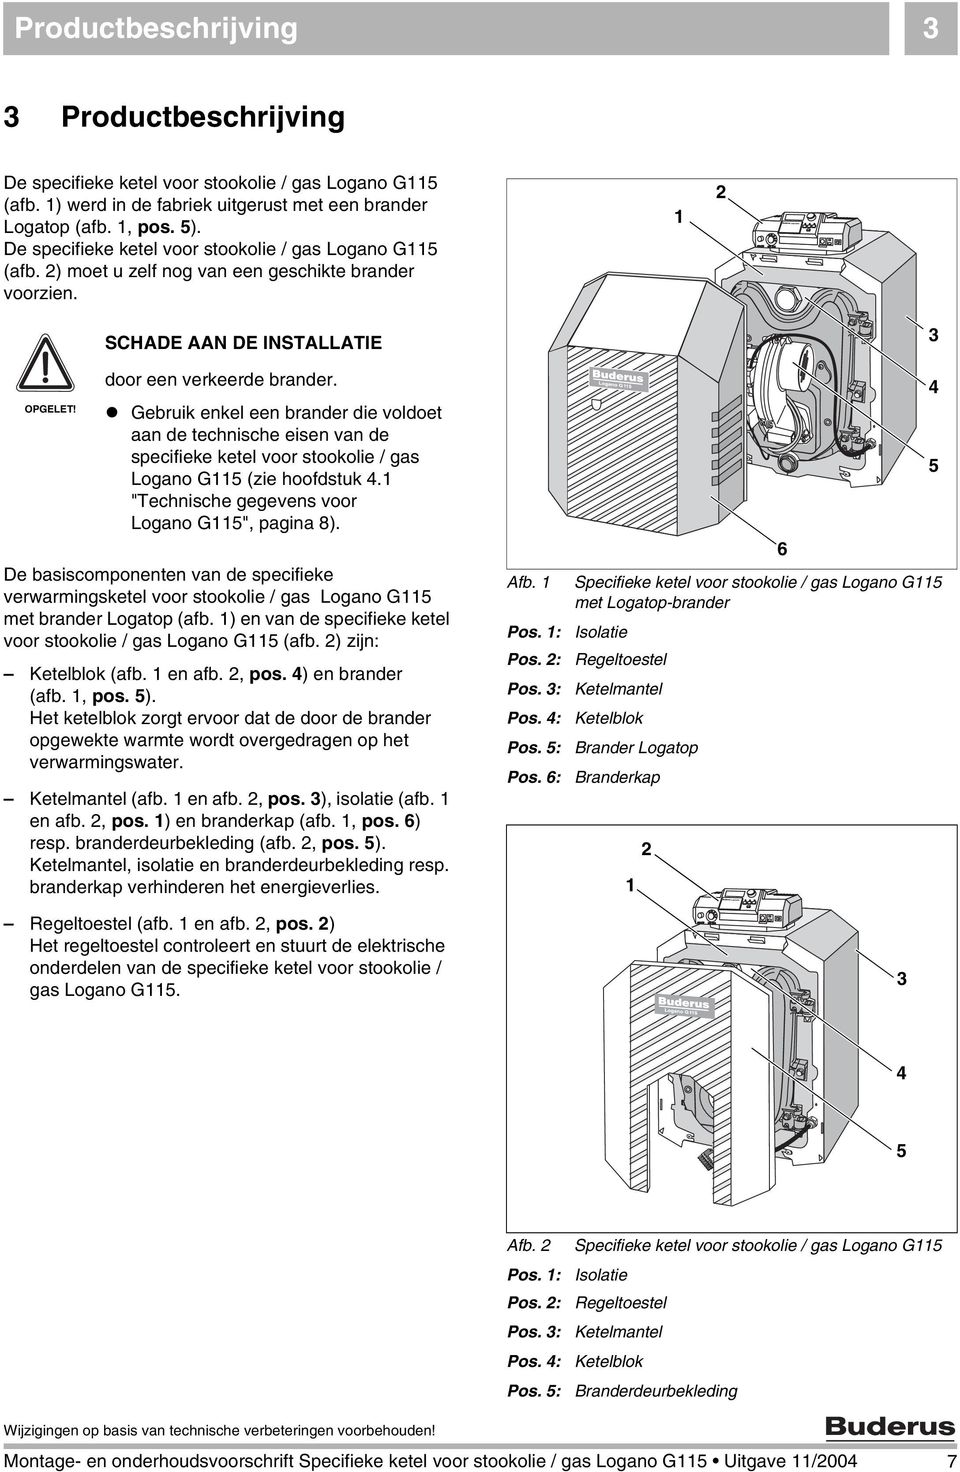 Gebruik enkel een brander die voldoet aan de technische eisen van de specifieke ketel voor stookolie / gas Logano G5 (zie hoofdstuk 4. "Technische gegevens voor Logano G5", pagina 8).